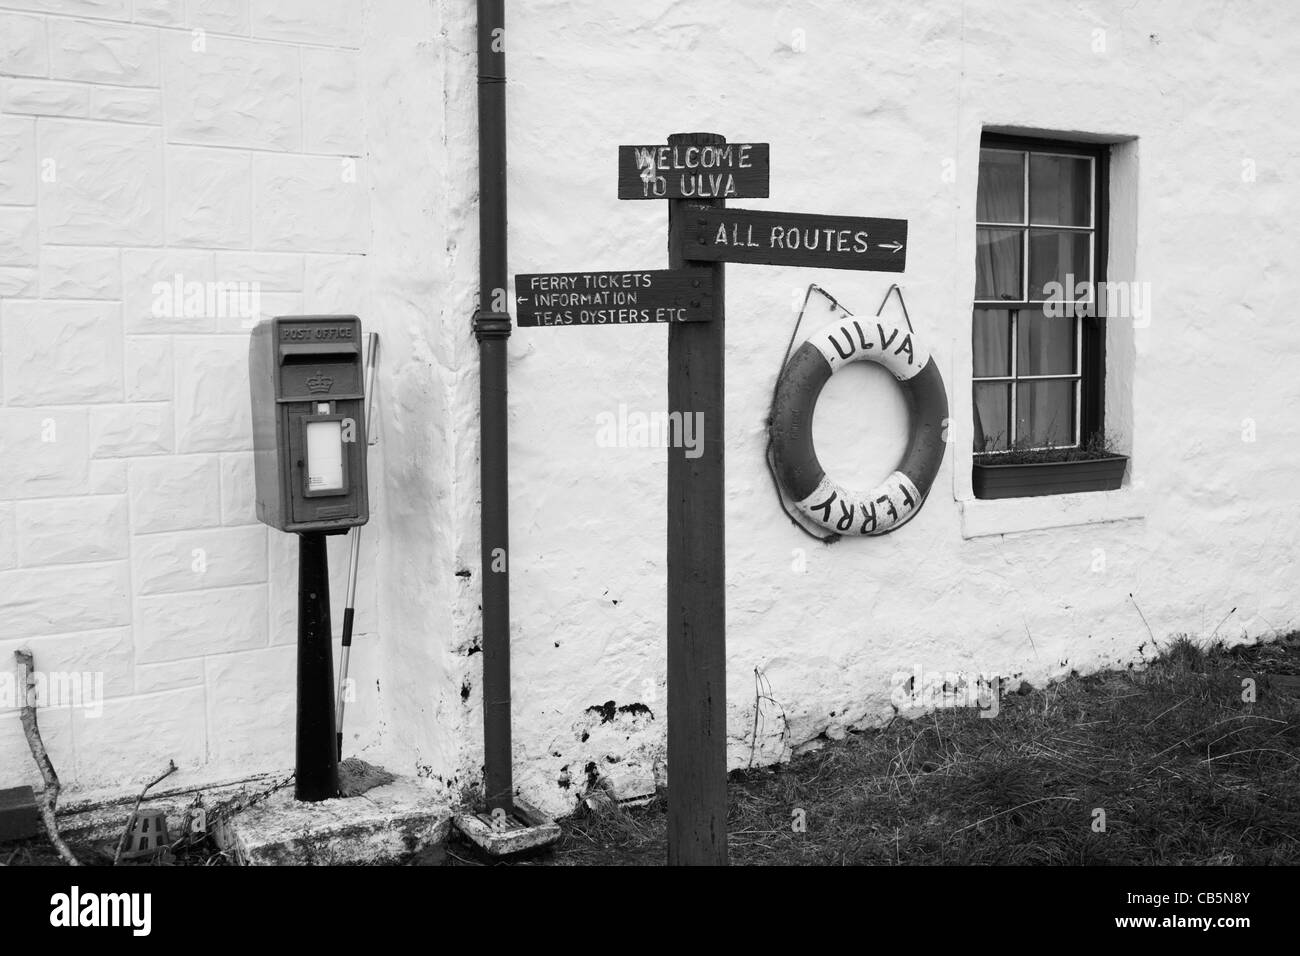 Dettaglio delle indicazioni per itinerari a piedi intorno all'Isola di Ulva, Isle of Mull, Scozia. Foto Stock